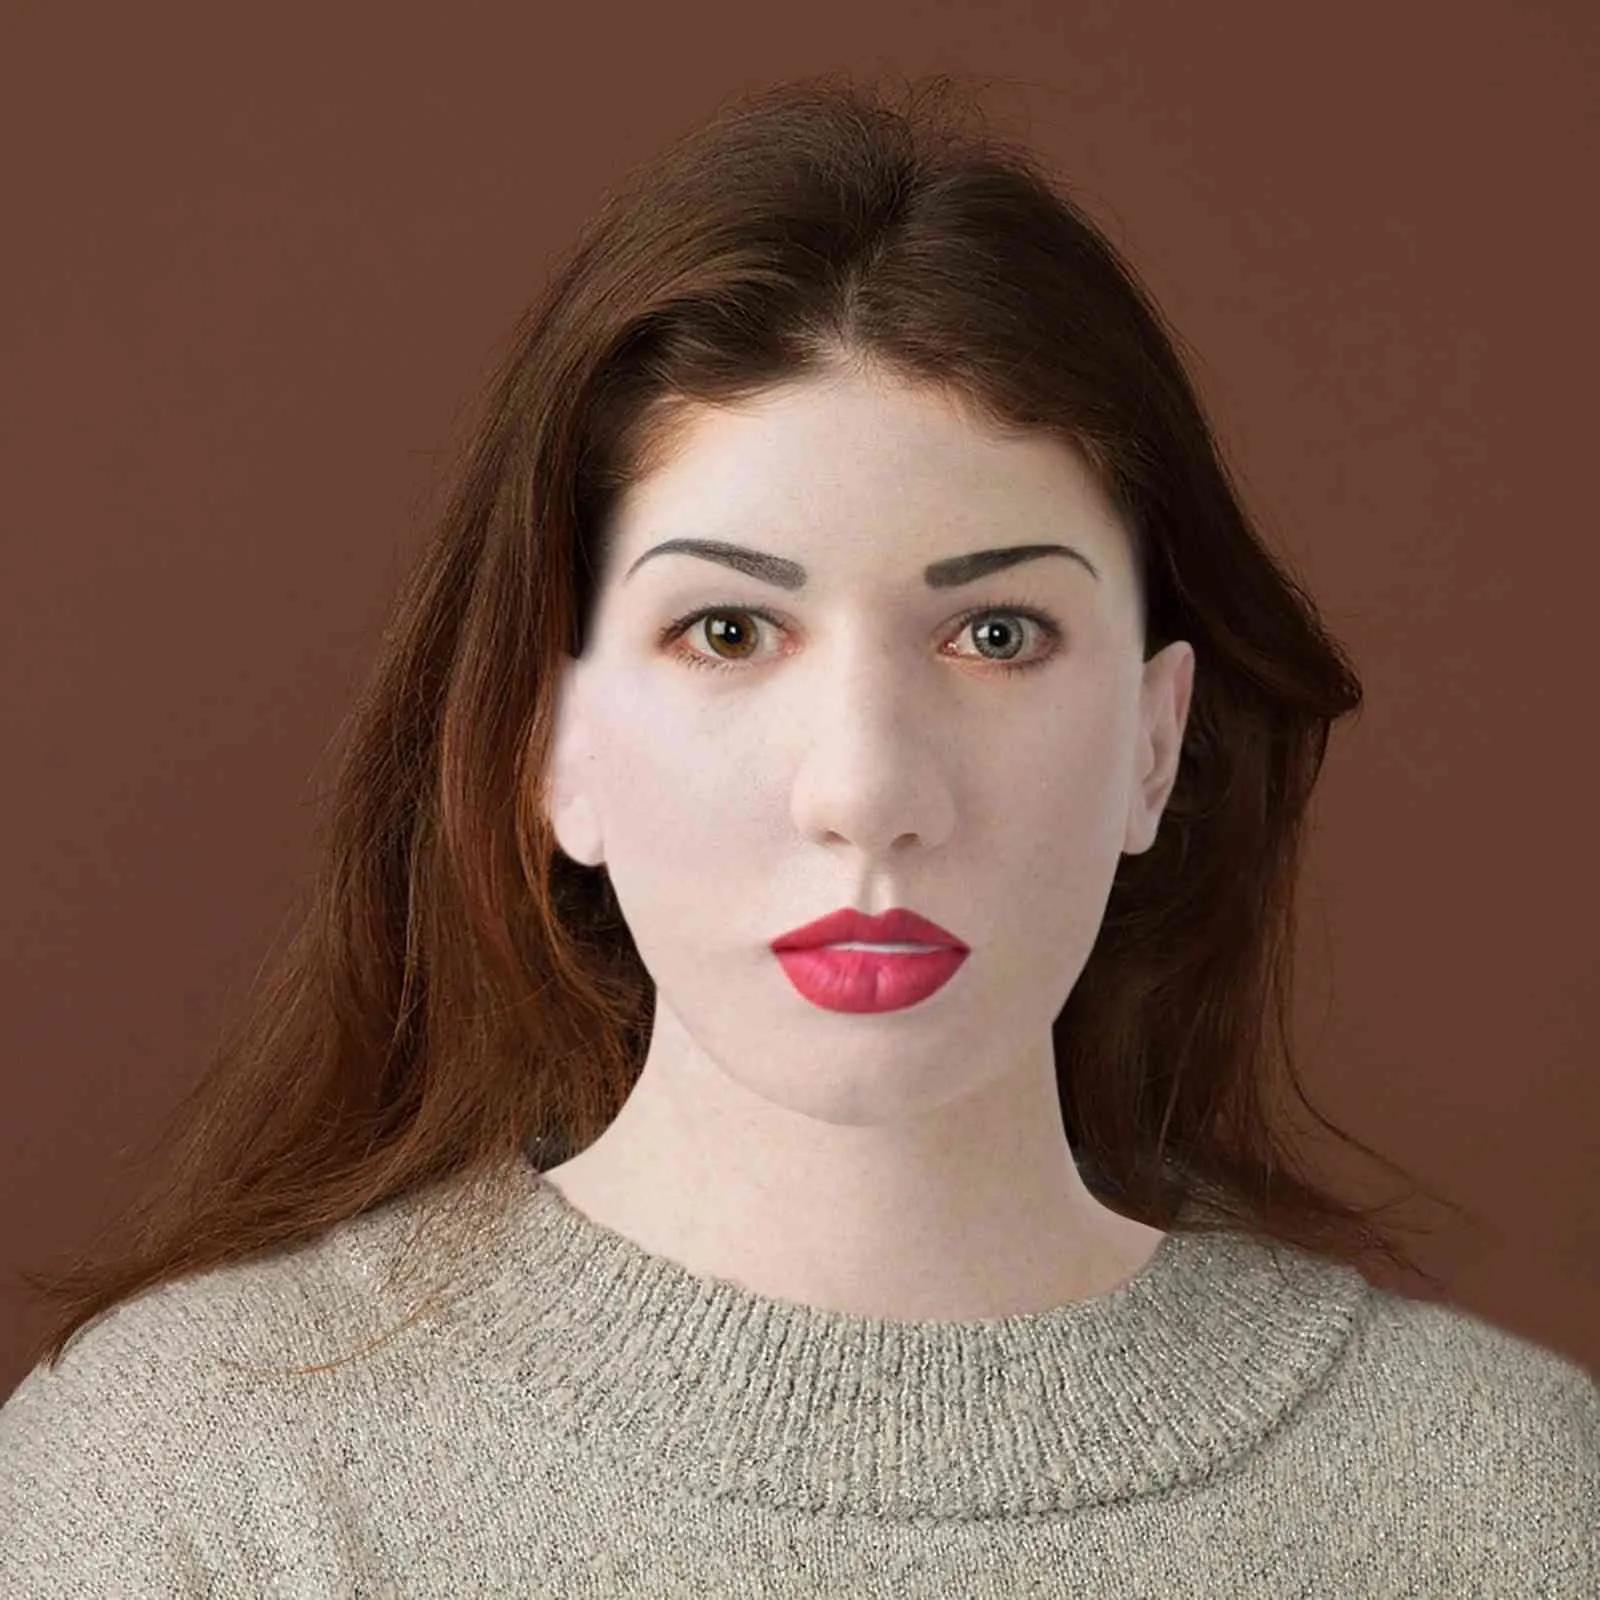 ラテックス顔面白い女性リアルなマスカレードシリコンコスプレ他の私の若者の肌マスクホリデースーパーマスク